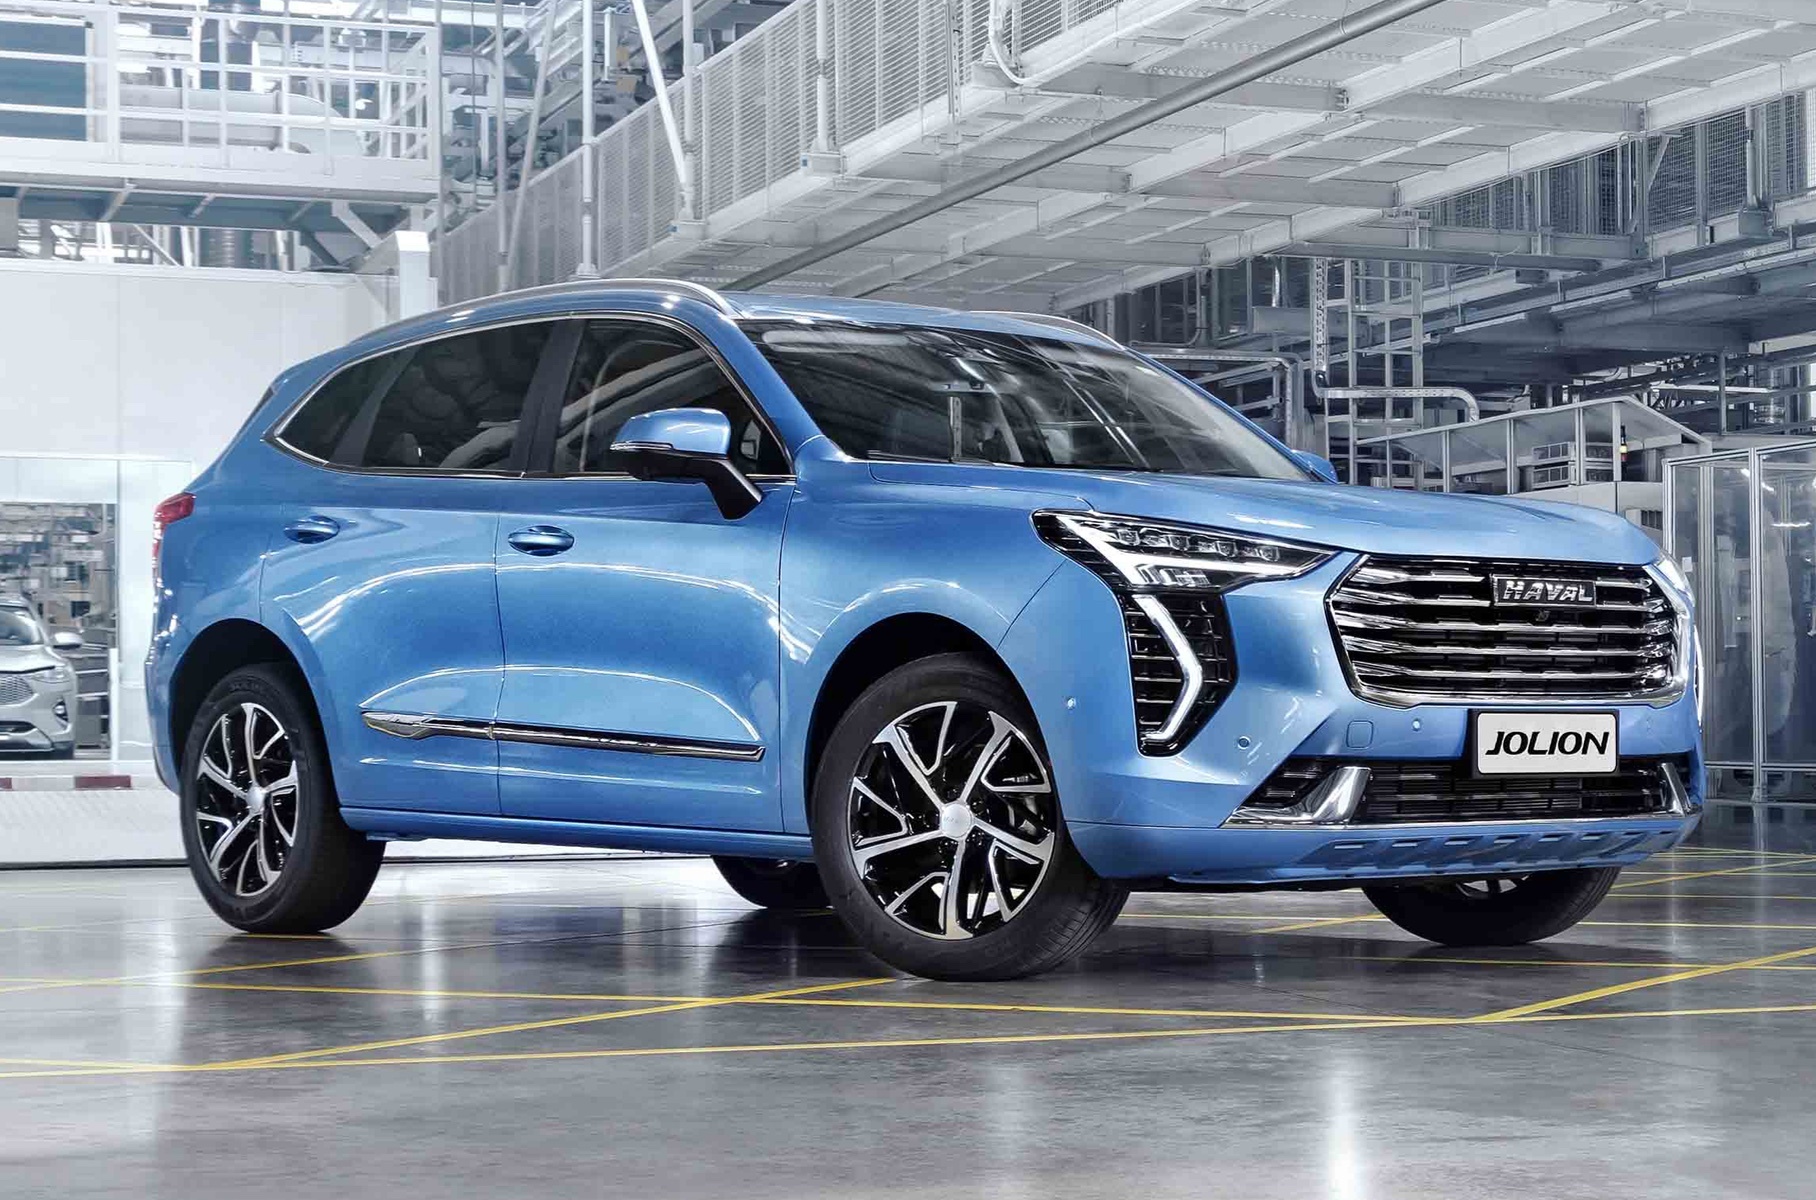 Эксперты выяснили, как ведут себя на дороге новые Hyundai Creta, Chevrolet Trailblazer и Haval Jolion | ТАРАНТАС НЬЮС